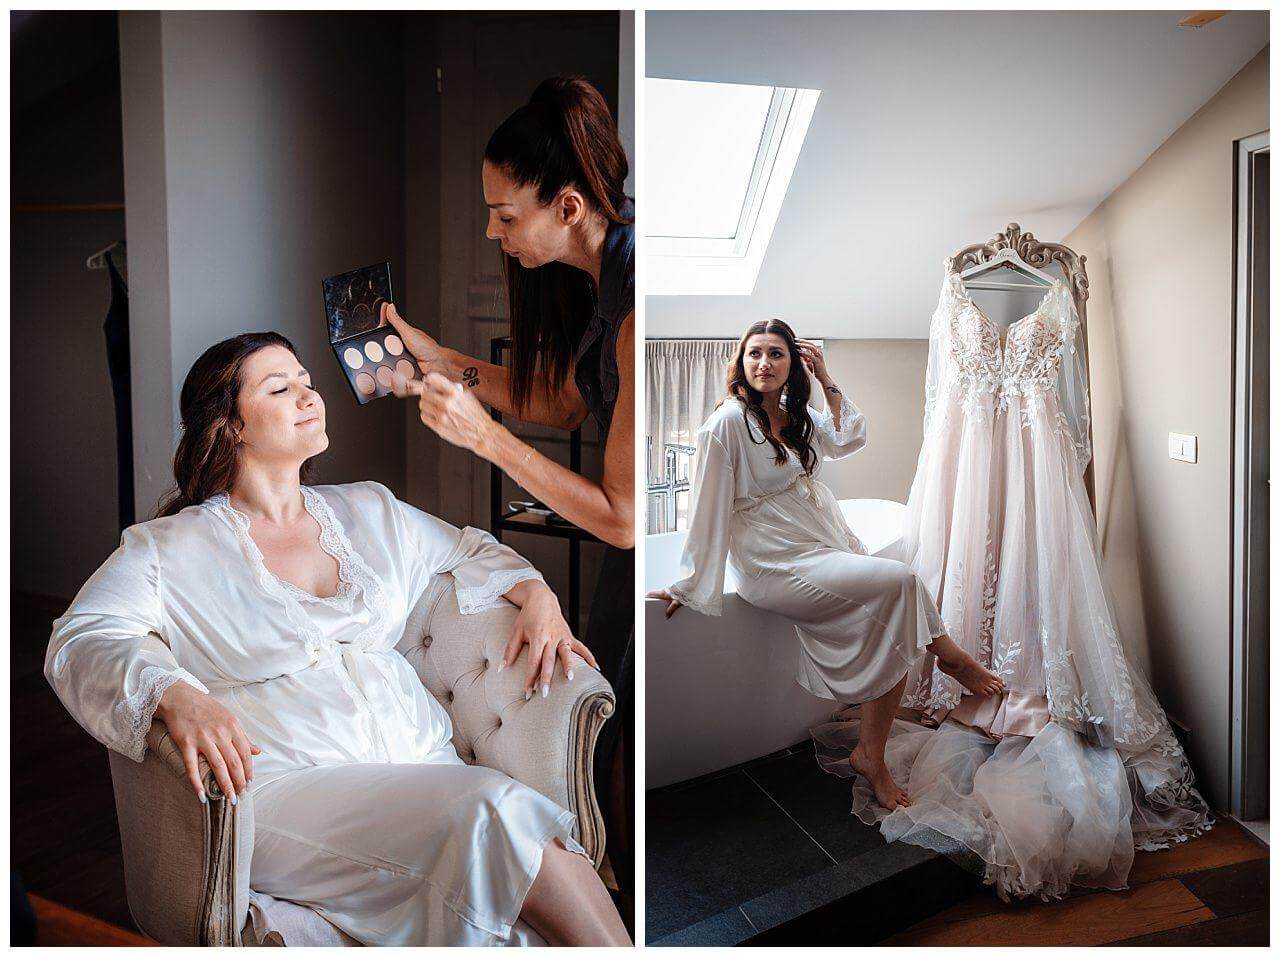 Braut getting ready und Brautkleid in weiß mit Rosa Unterton bei einer Hochzeit in einer privaten Finka in Kroatien